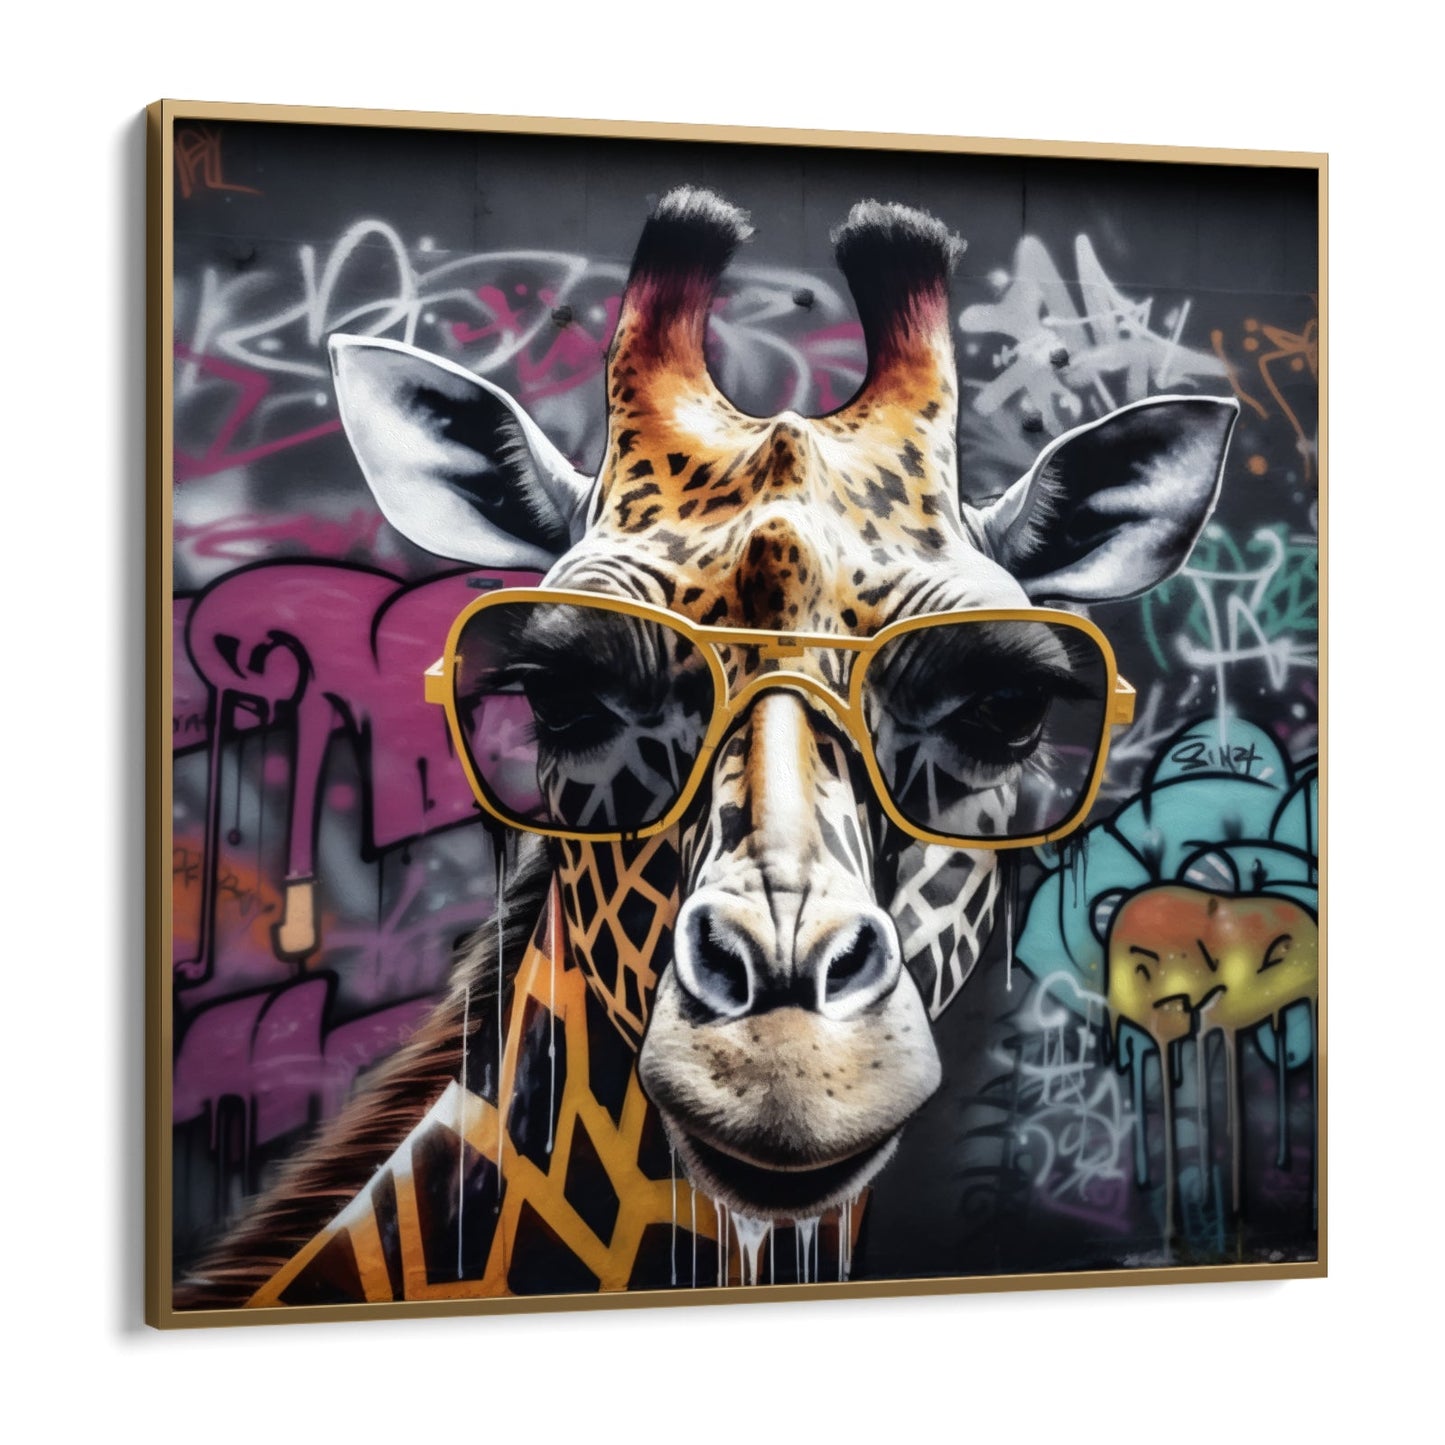 Graffiti giraf